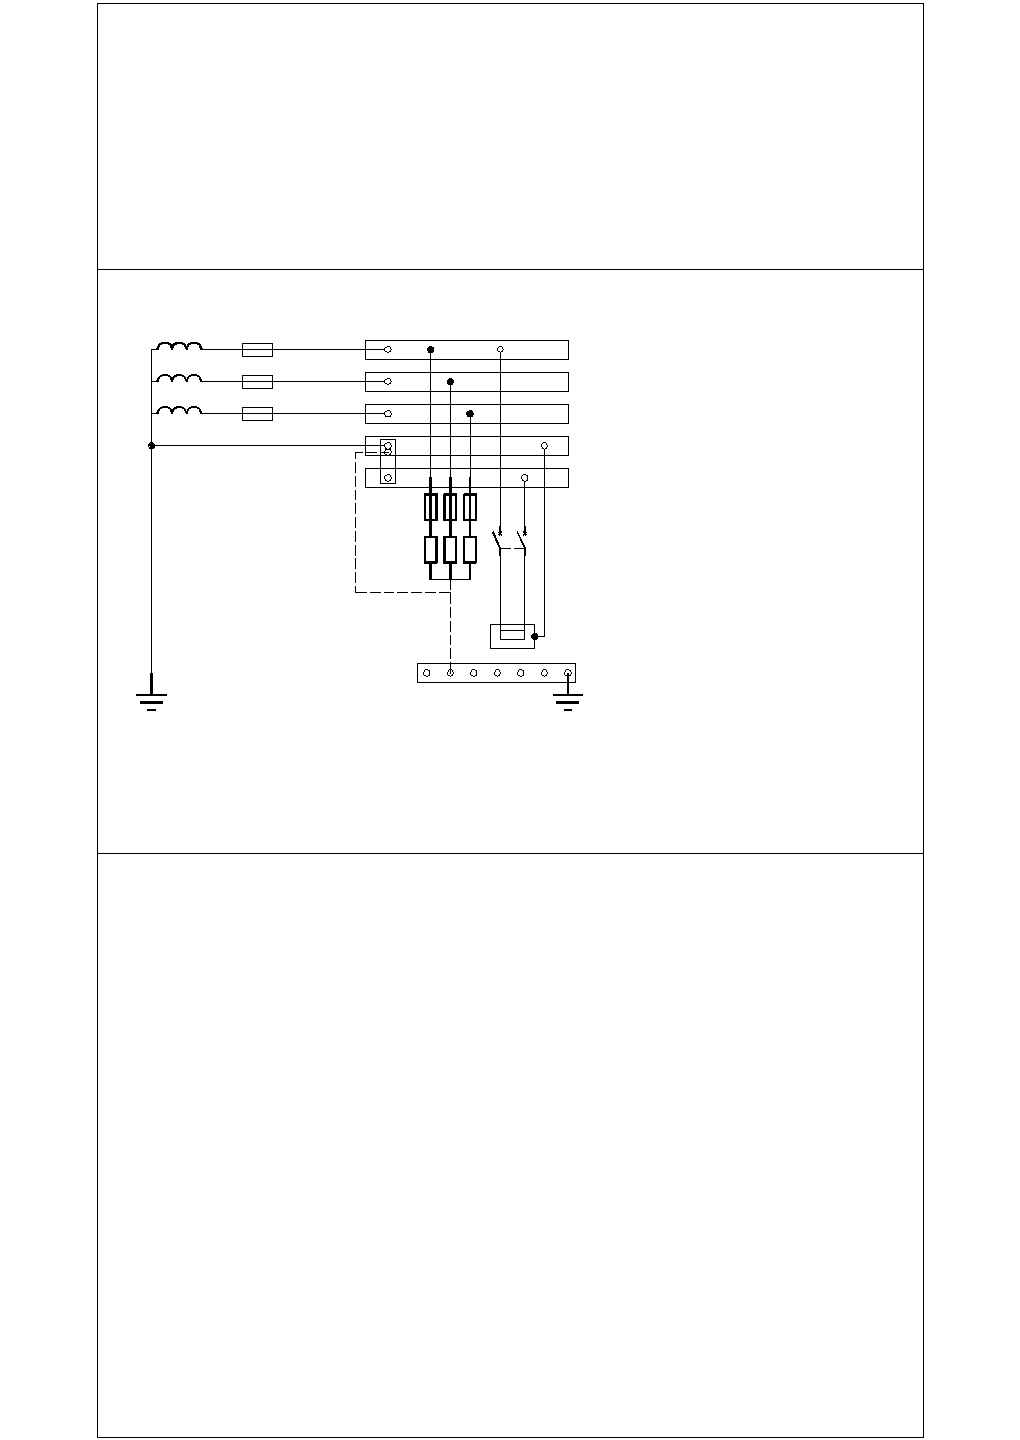 建筑工程防雷接地系统电气设计参考布置图